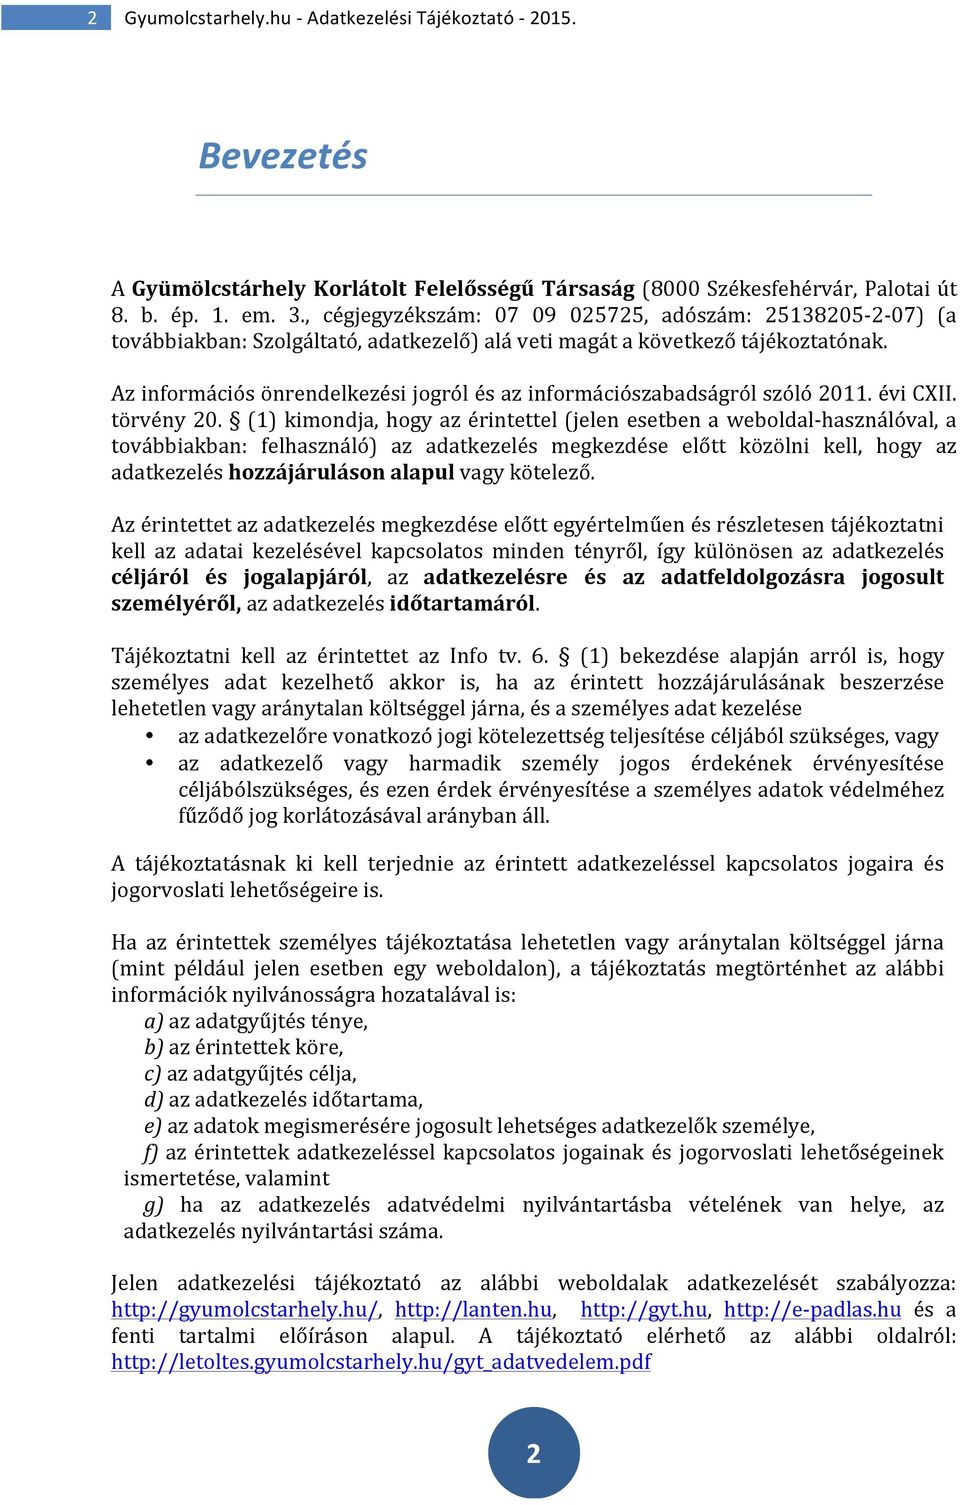 Az információs önrendelkezési jogról és az információszabadságról szóló 2011. évi CXII. törvény 20.